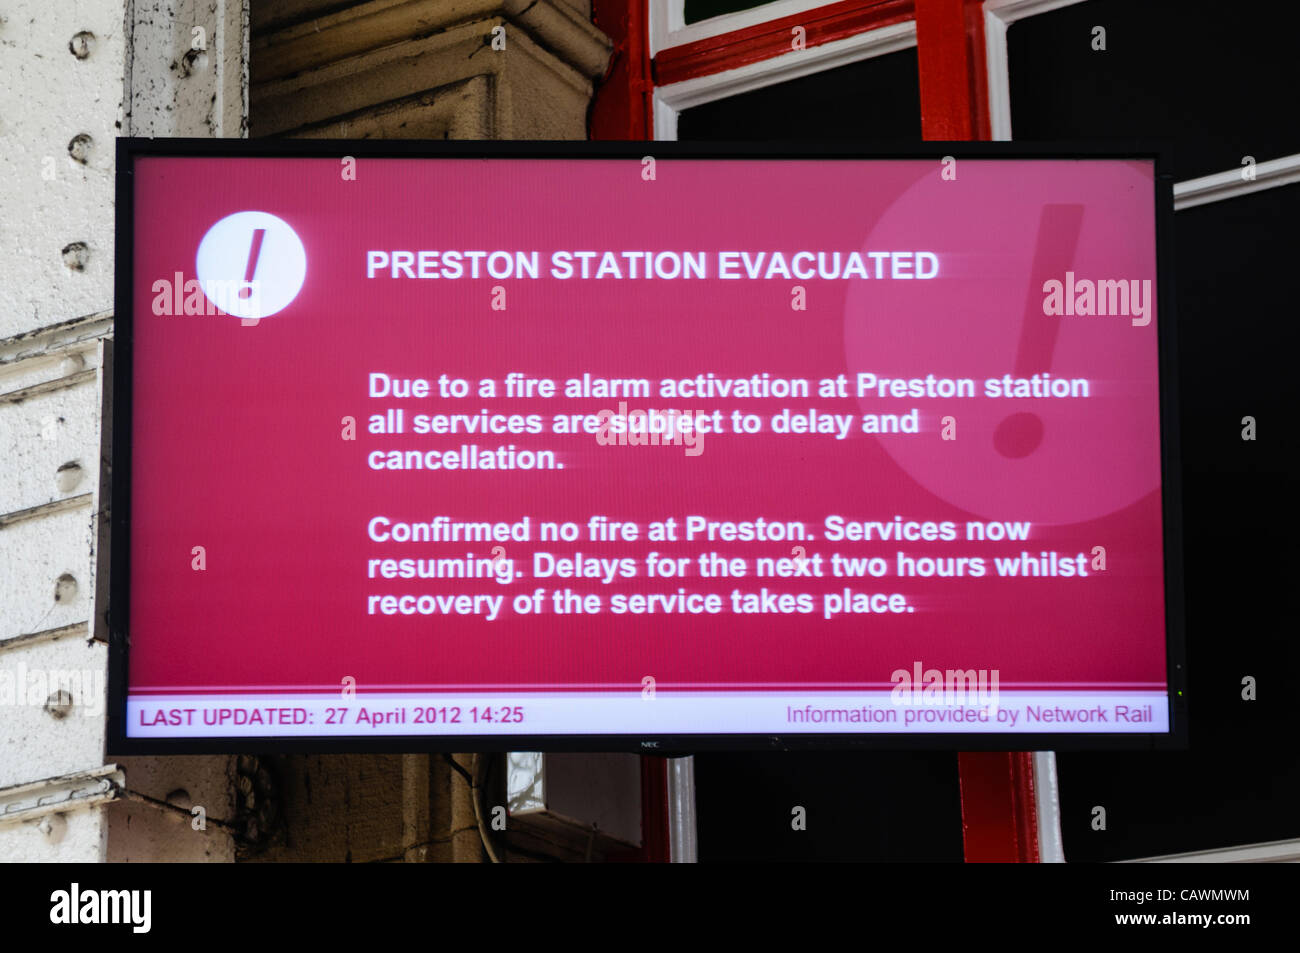 Preston, Lancs. 27.04.2012 - stören Verzögerungen Reisepläne Preston zum Bahnhof nach Evakuierung wegen fehlerhafter Brandmelder. Stockfoto